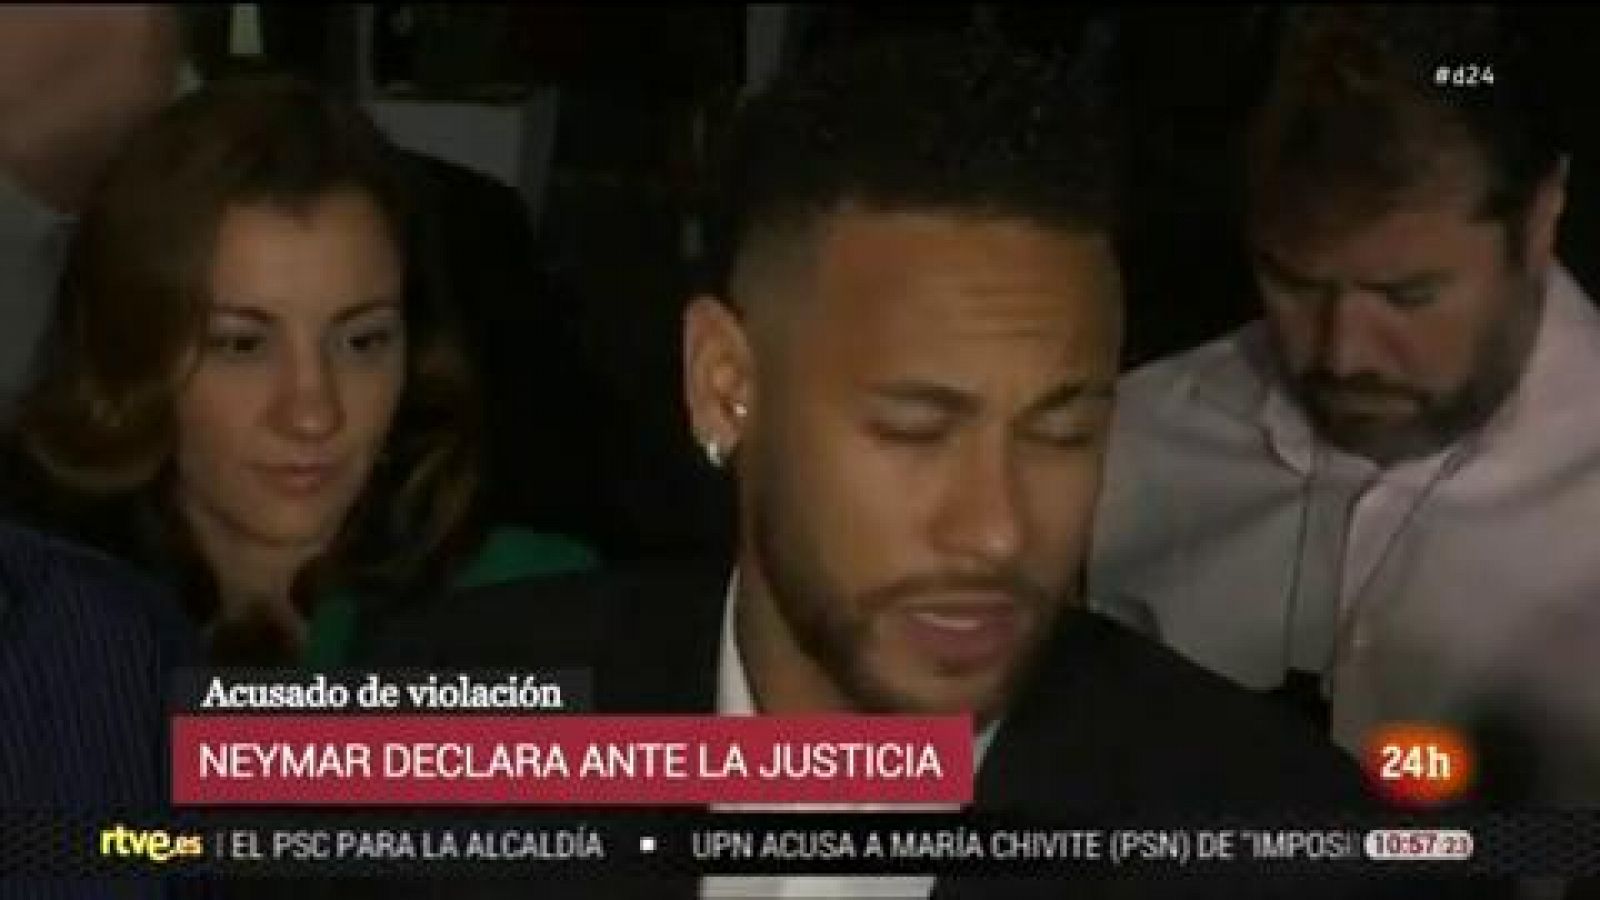 Neymar: "La verdad aparece tarde o temprano"